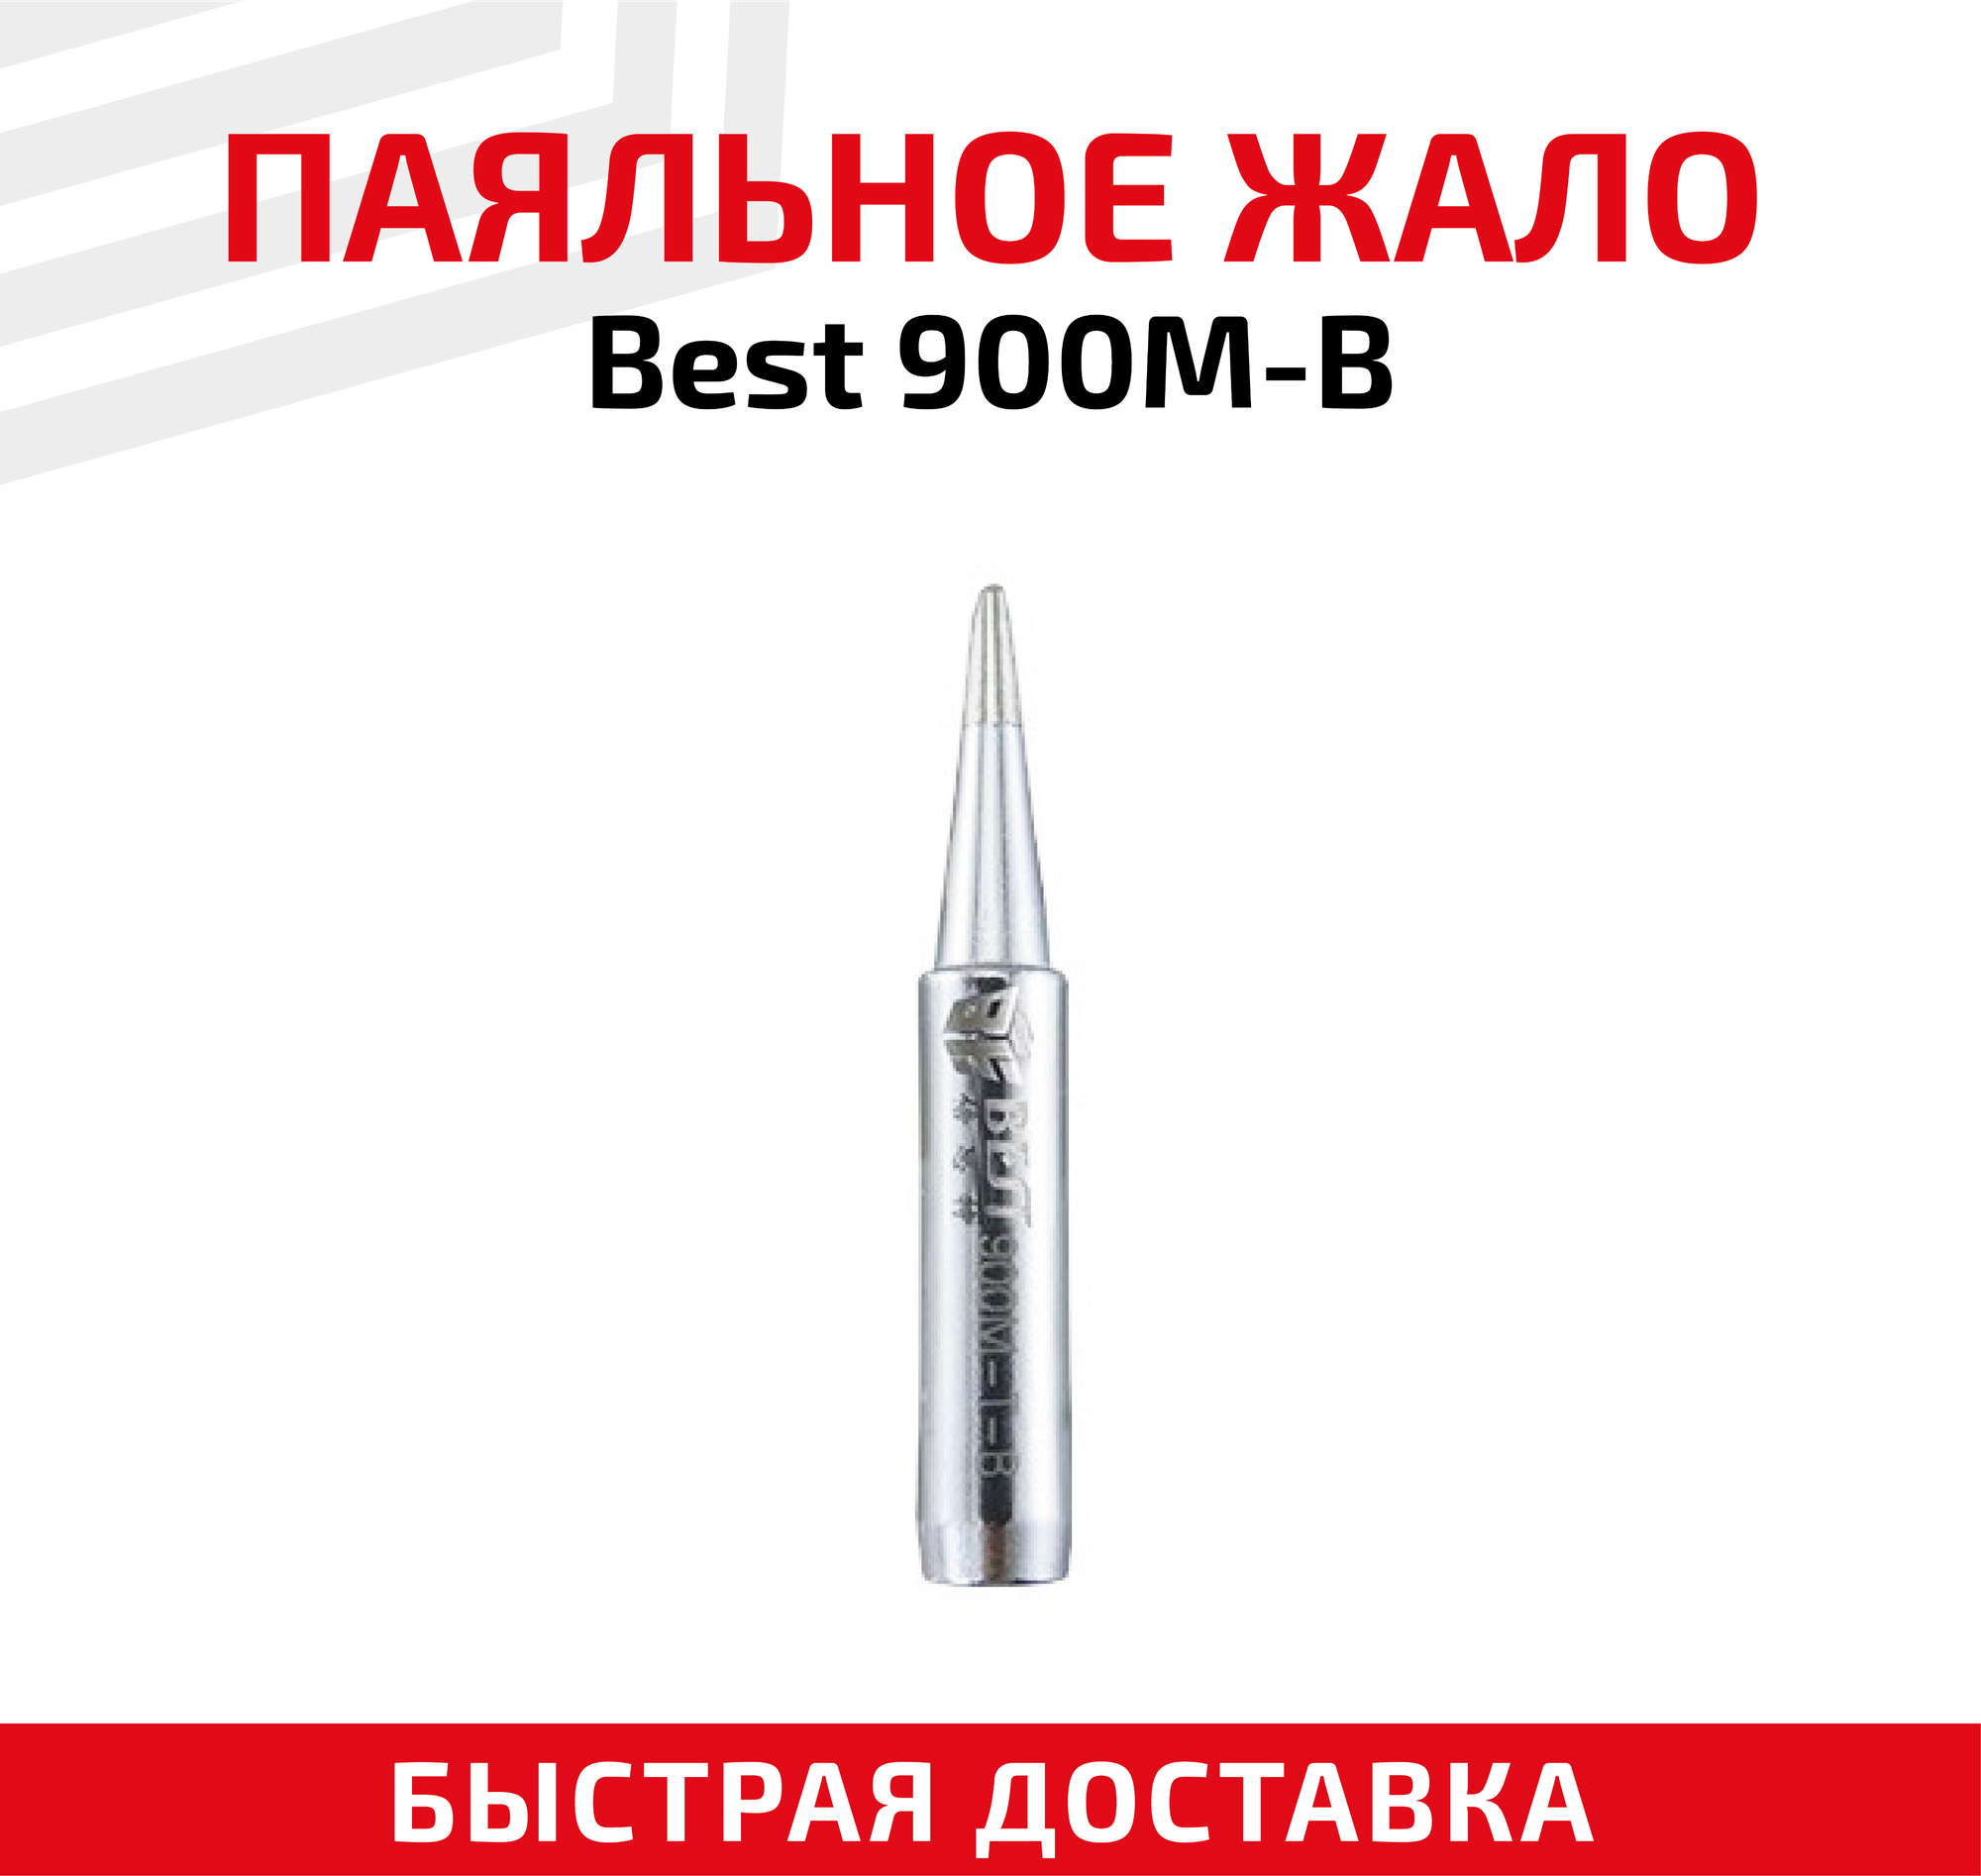 Жало (насадка, наконечник) для паяльника (паяльной станции) Best 900M-B, коническое, 0.5 мм